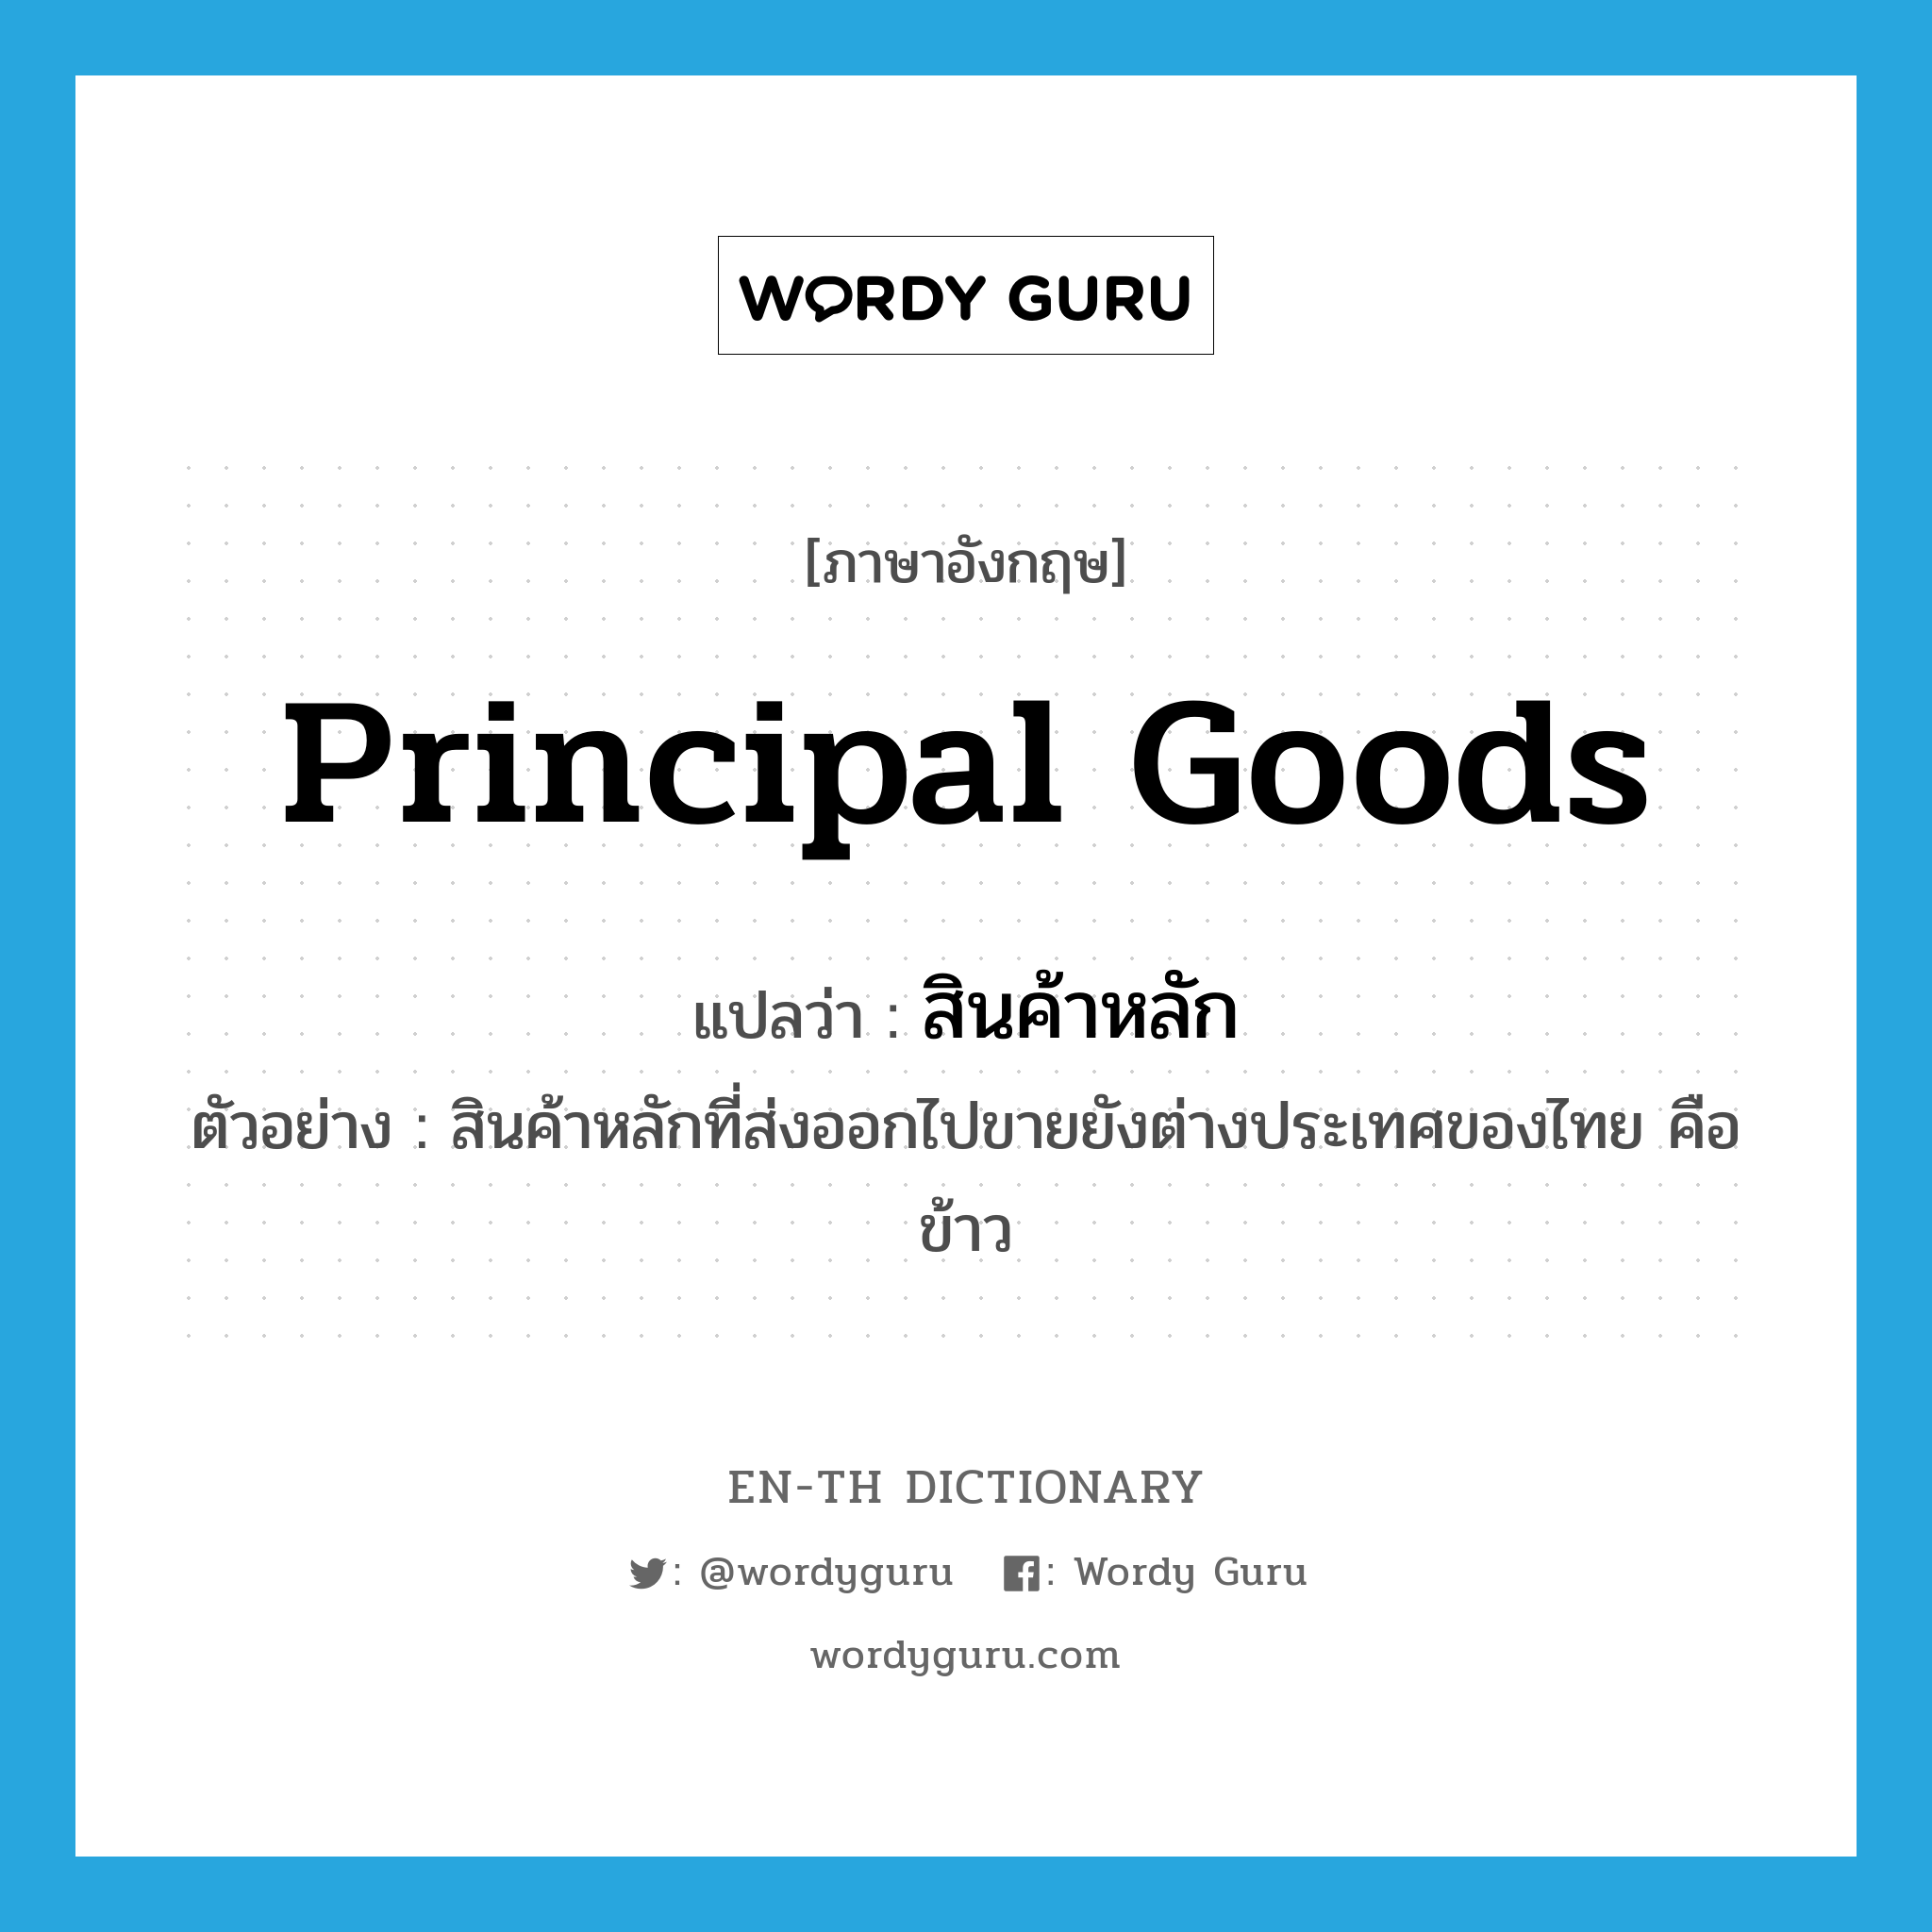 principal goods แปลว่า?, คำศัพท์ภาษาอังกฤษ principal goods แปลว่า สินค้าหลัก ประเภท N ตัวอย่าง สินค้าหลักที่ส่งออกไปขายยังต่างประเทศของไทย คือ ข้าว หมวด N